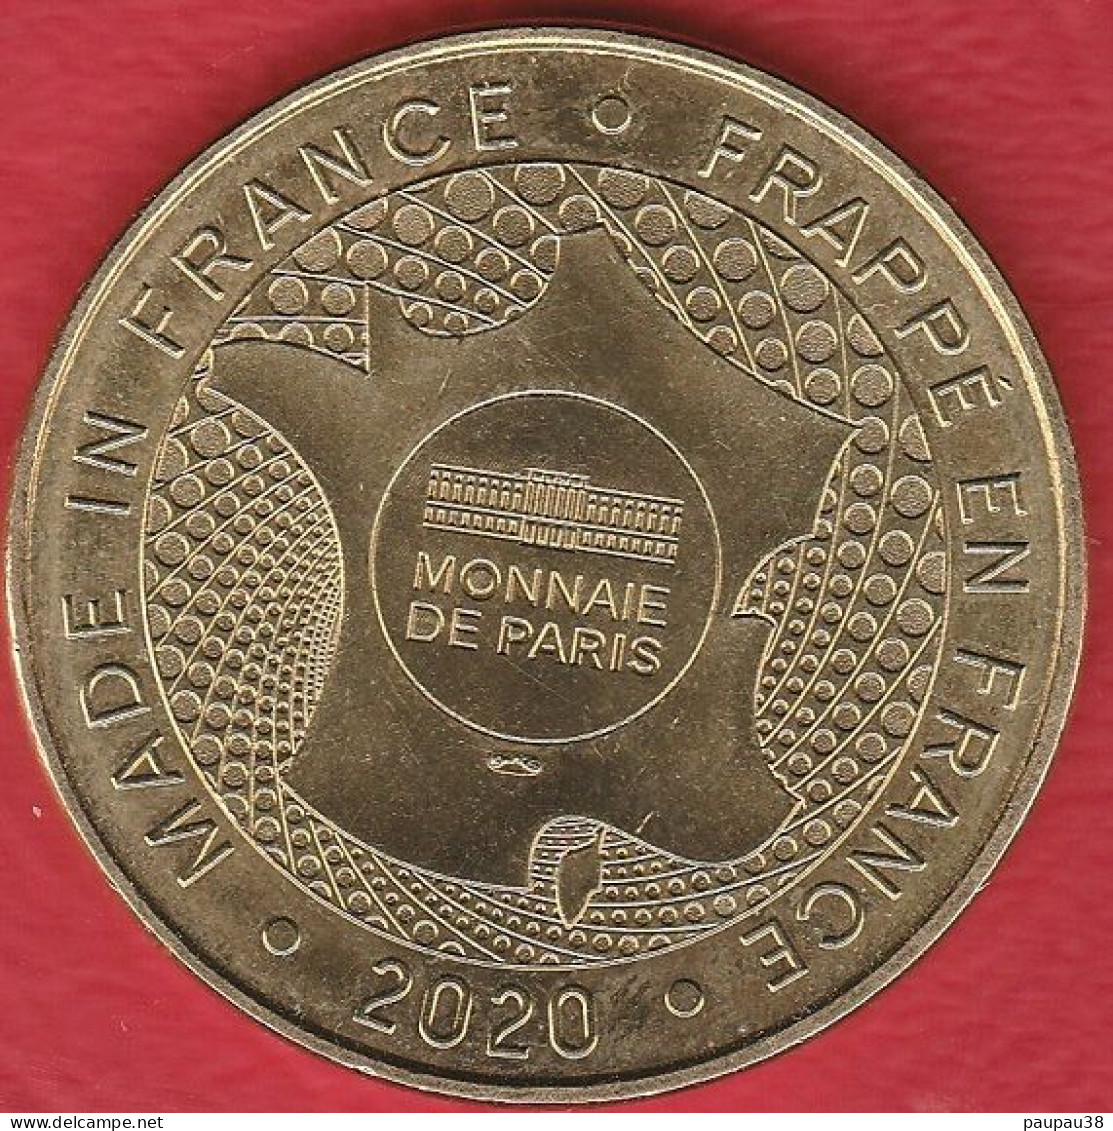 MONNAIE DE PARIS 2020 - 41 BLOIS CHATEAU ROYAL-ESCALIER FRANCOIS - 2020